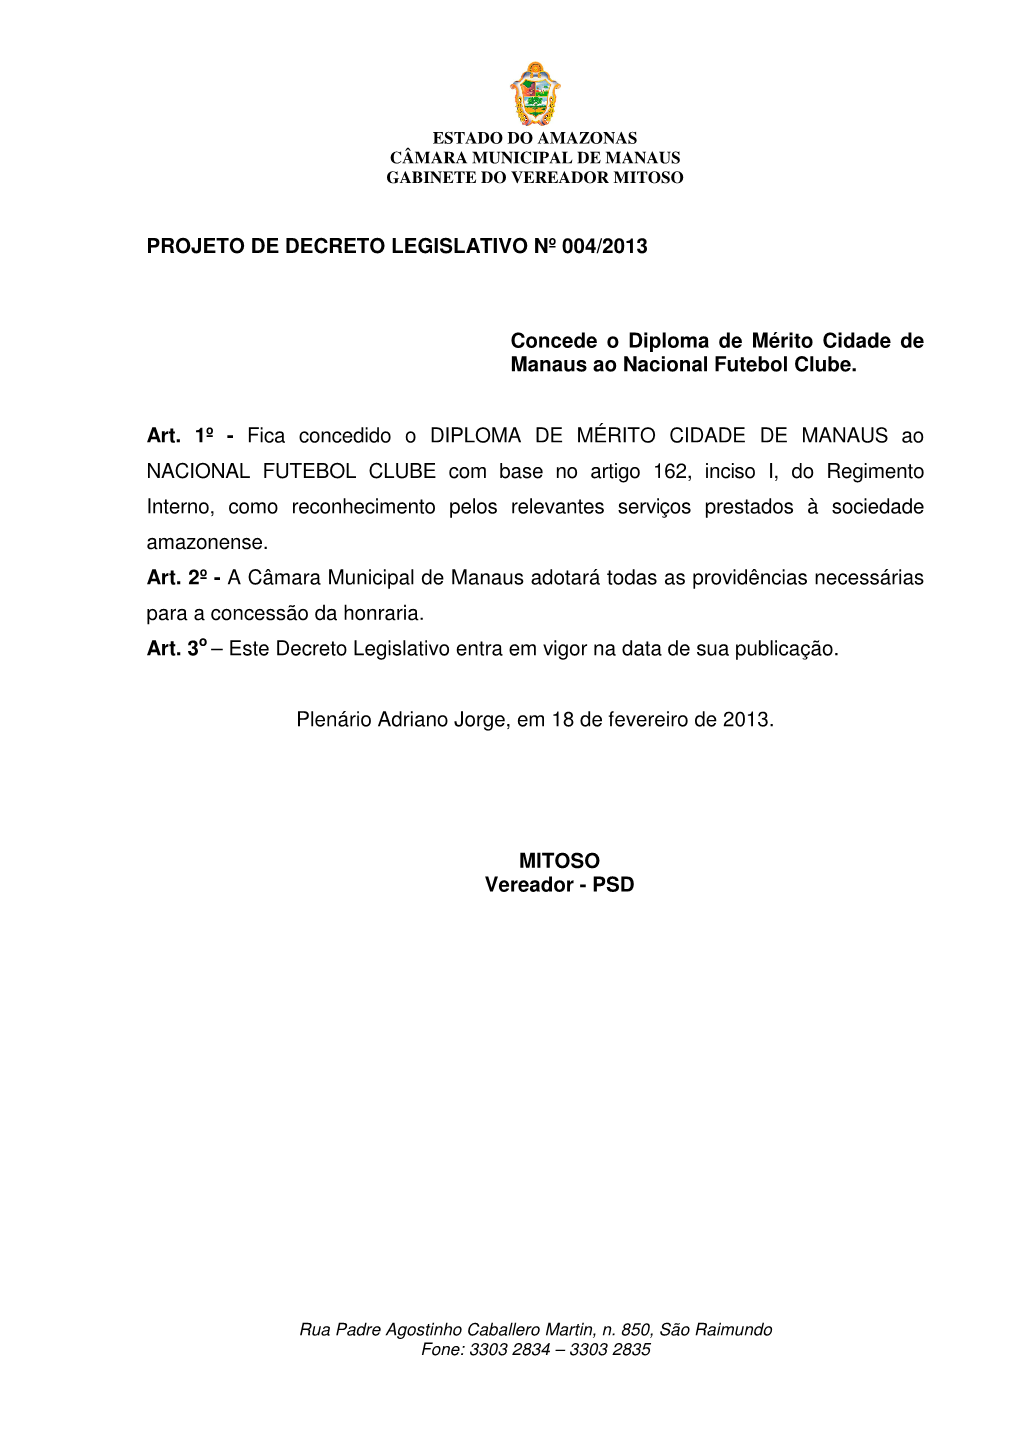 PROJETO DE DECRETO LEGISLATIVO Nº 004/2013 Concede O Diploma De Mérito Cidade De Manaus Ao Nacional Futebol Clube. Art. 1º